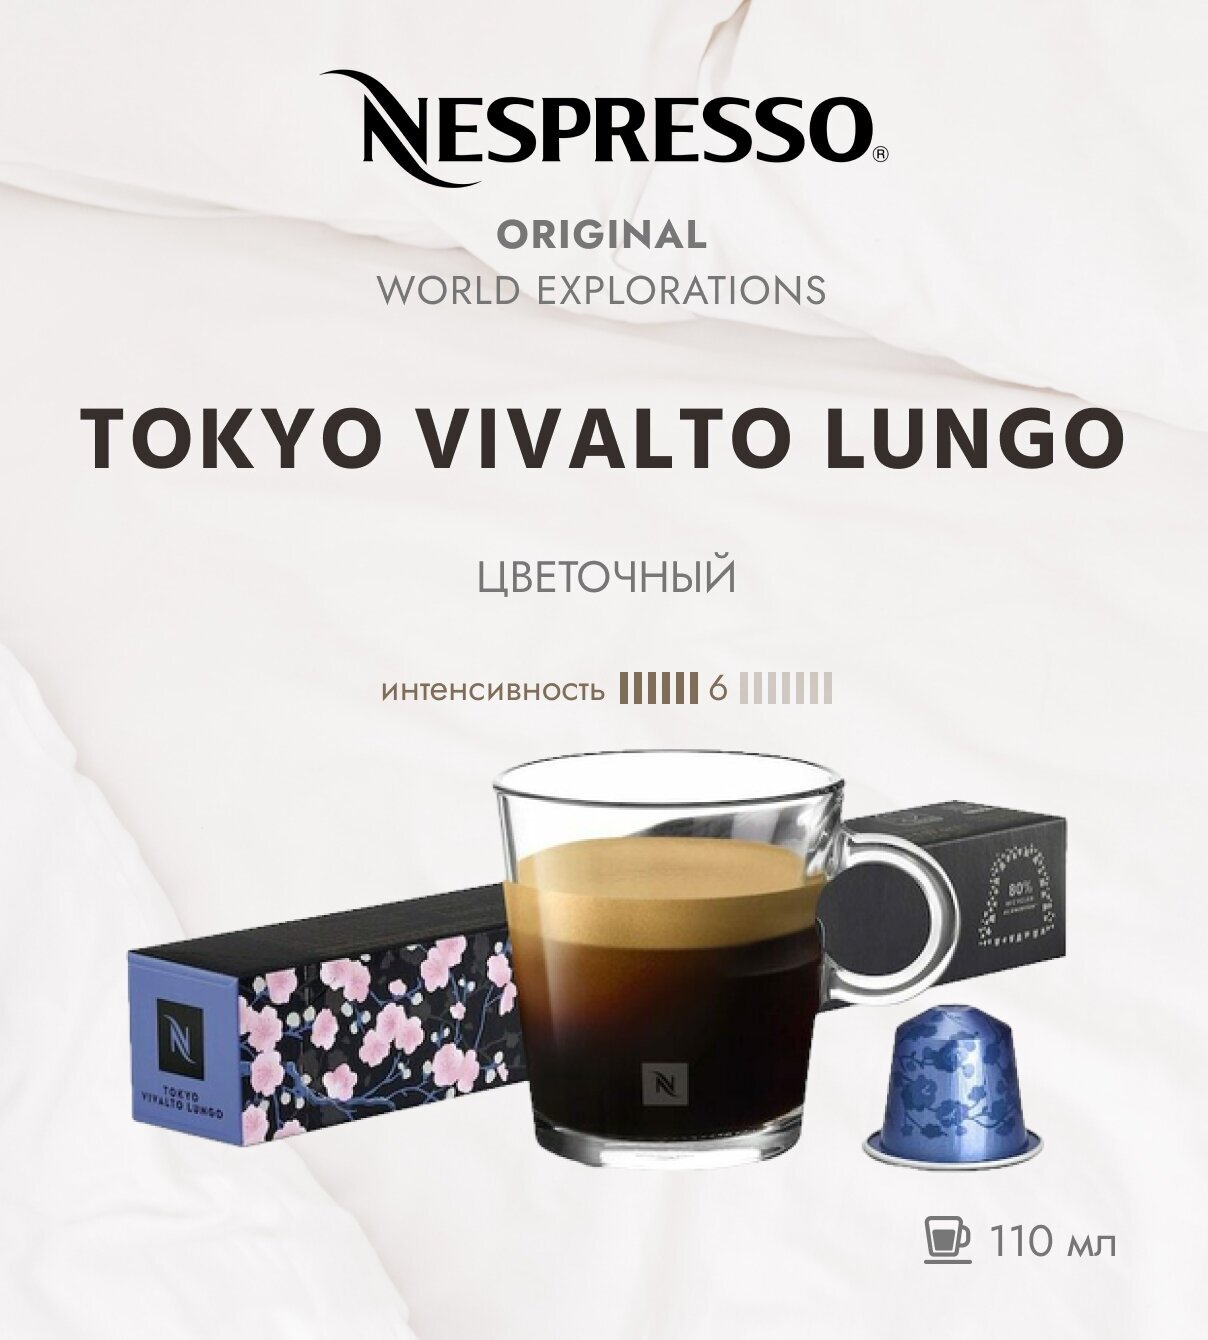 Кофе в капсулах Nespresso Tokyo Vivalto Lungo 110 мл. 6/13 одна упаковка капсул Неспрессо Original (10 шт)